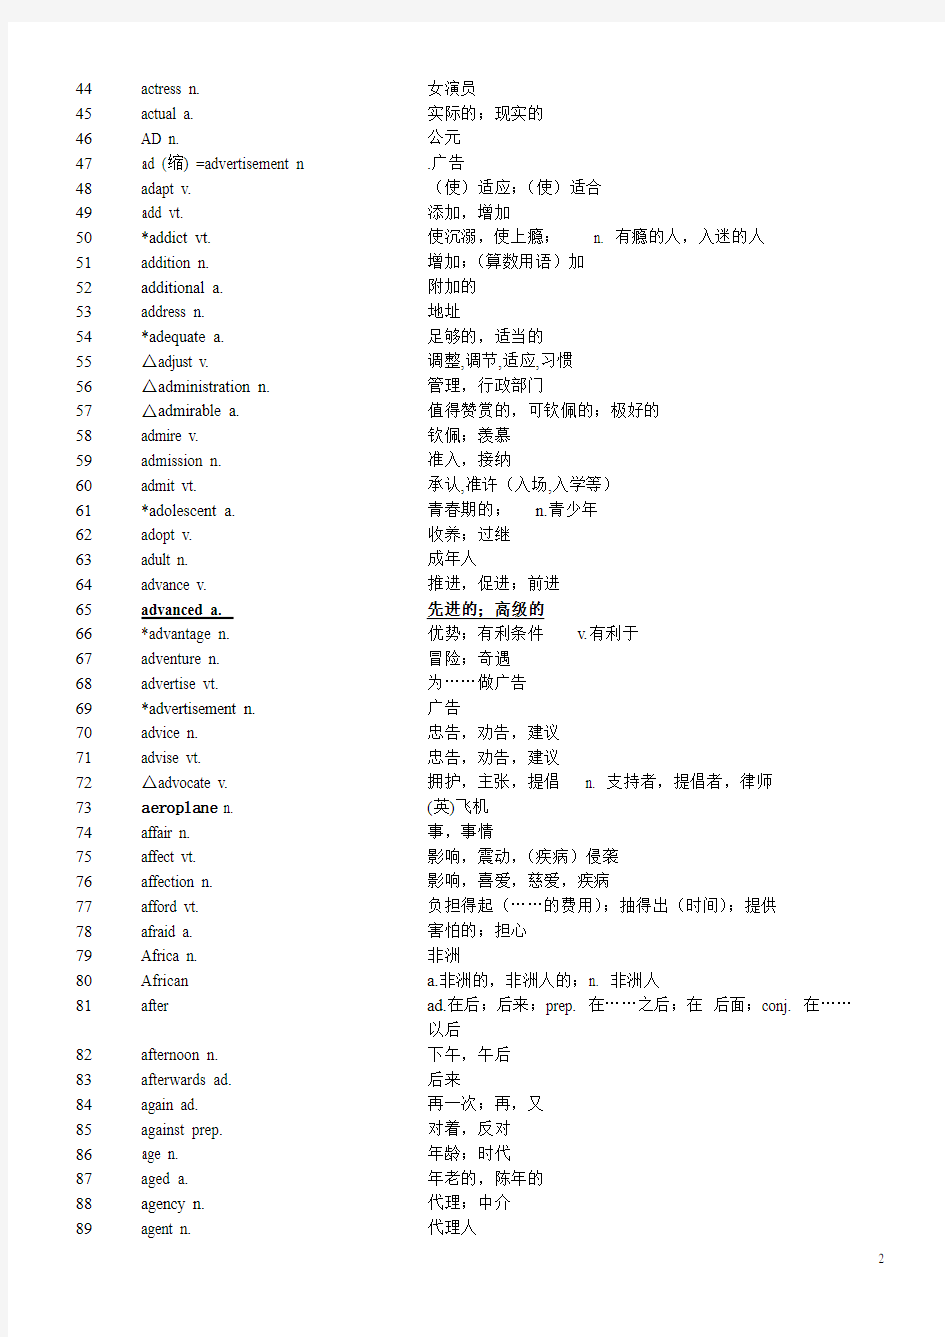 2018最新上海高考英语考纲词汇表